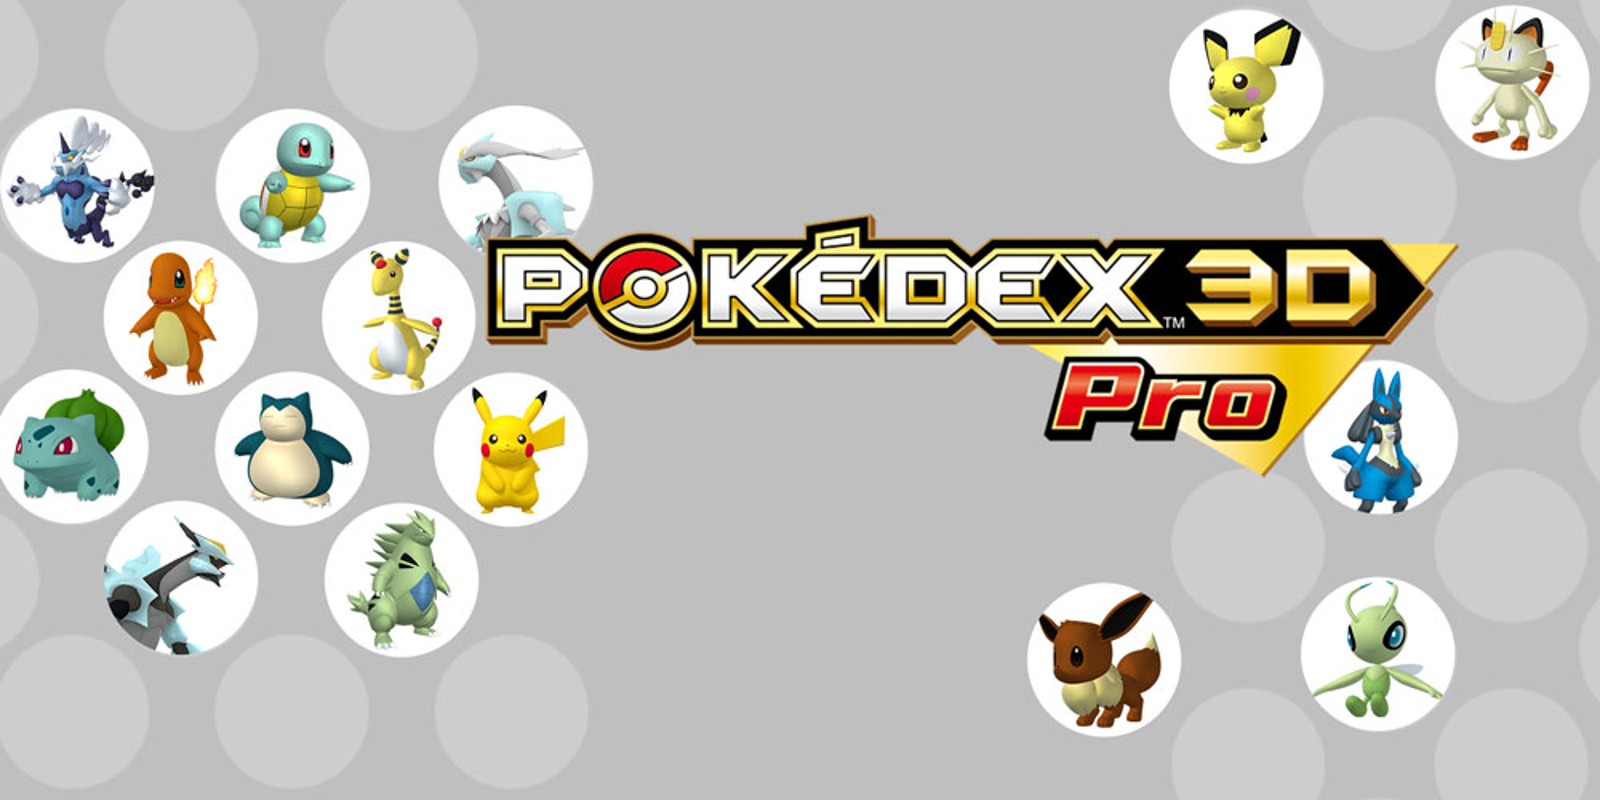 Pokédex 3D Pro